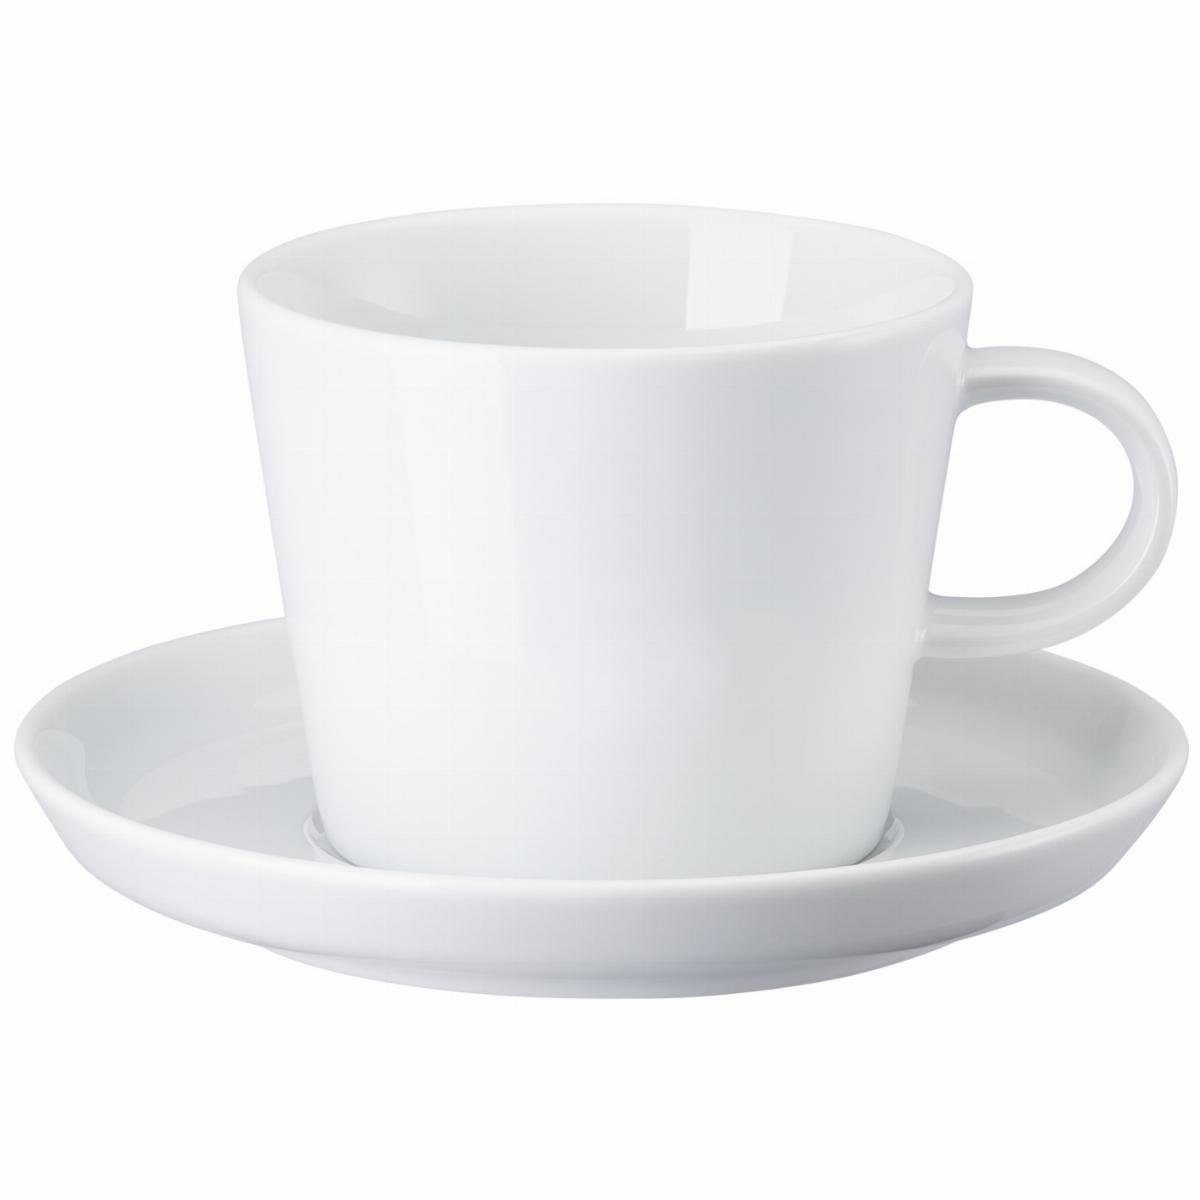 ARZBERG Tasse Café Au Lait Tasse 2-tlg. - CUCINA BIANCA Weiß - 1 Set, Porzellan, Porzellan, spülmaschinenfest und mikrowellengeeignet